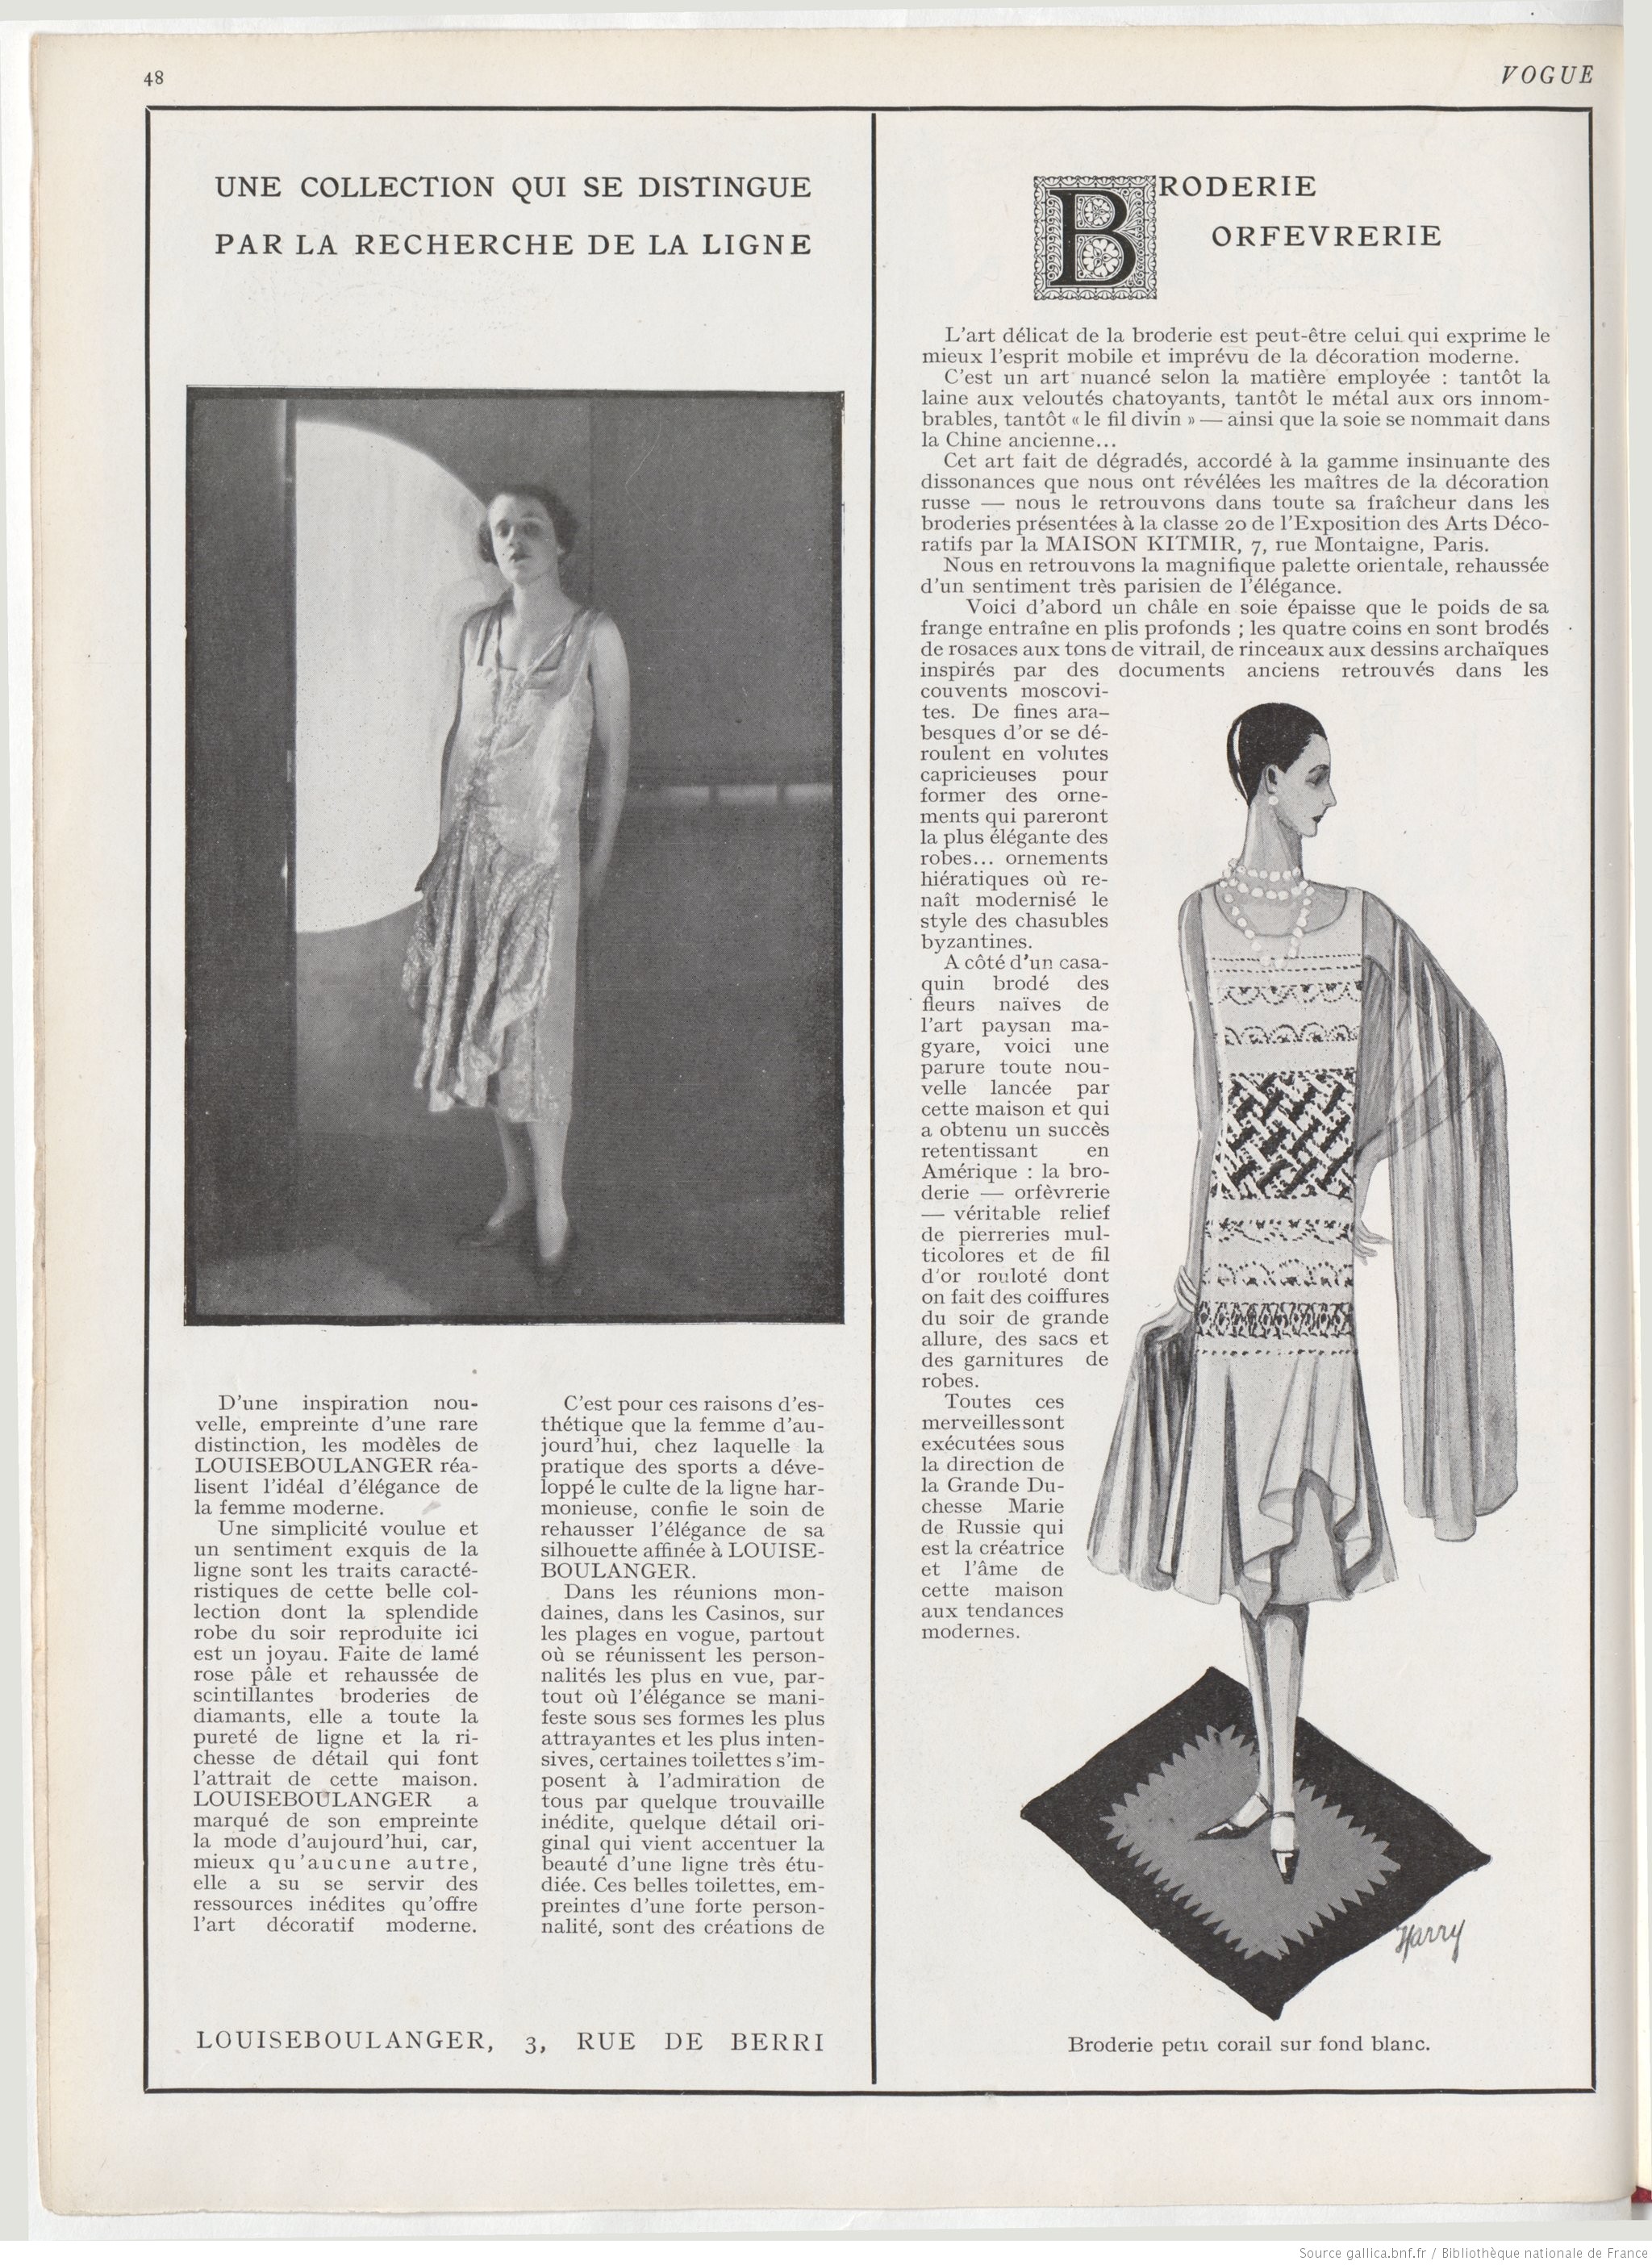 Страница журнала Vogue август 1925